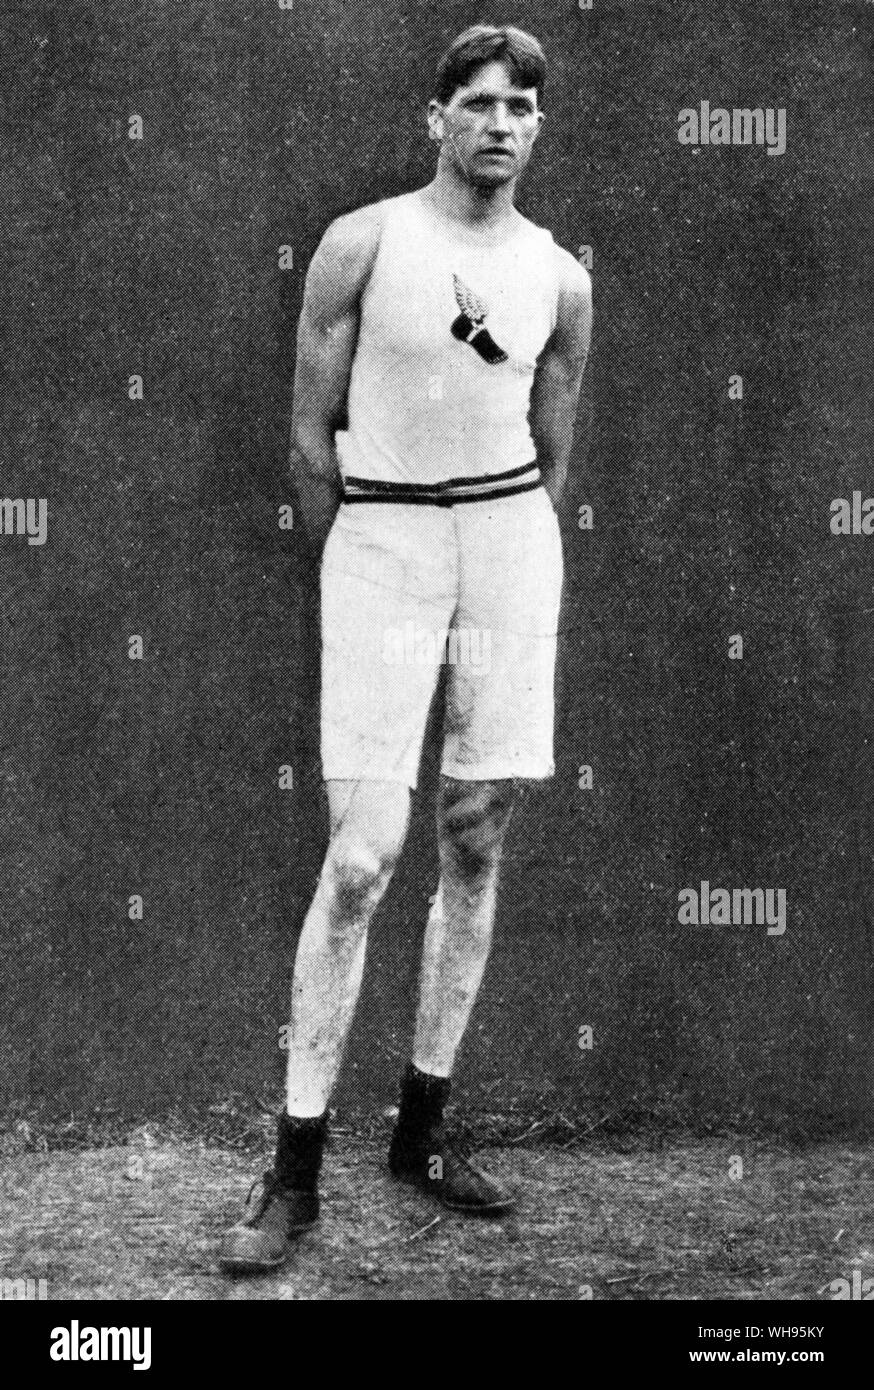 Ray Ewry (1873-1937): pista americana y atleta de campo, quien ganó un total de 10 medallas de oro en los Juegos Olímpicos de 1900, 1904, 1906 y 1908. Foto de stock